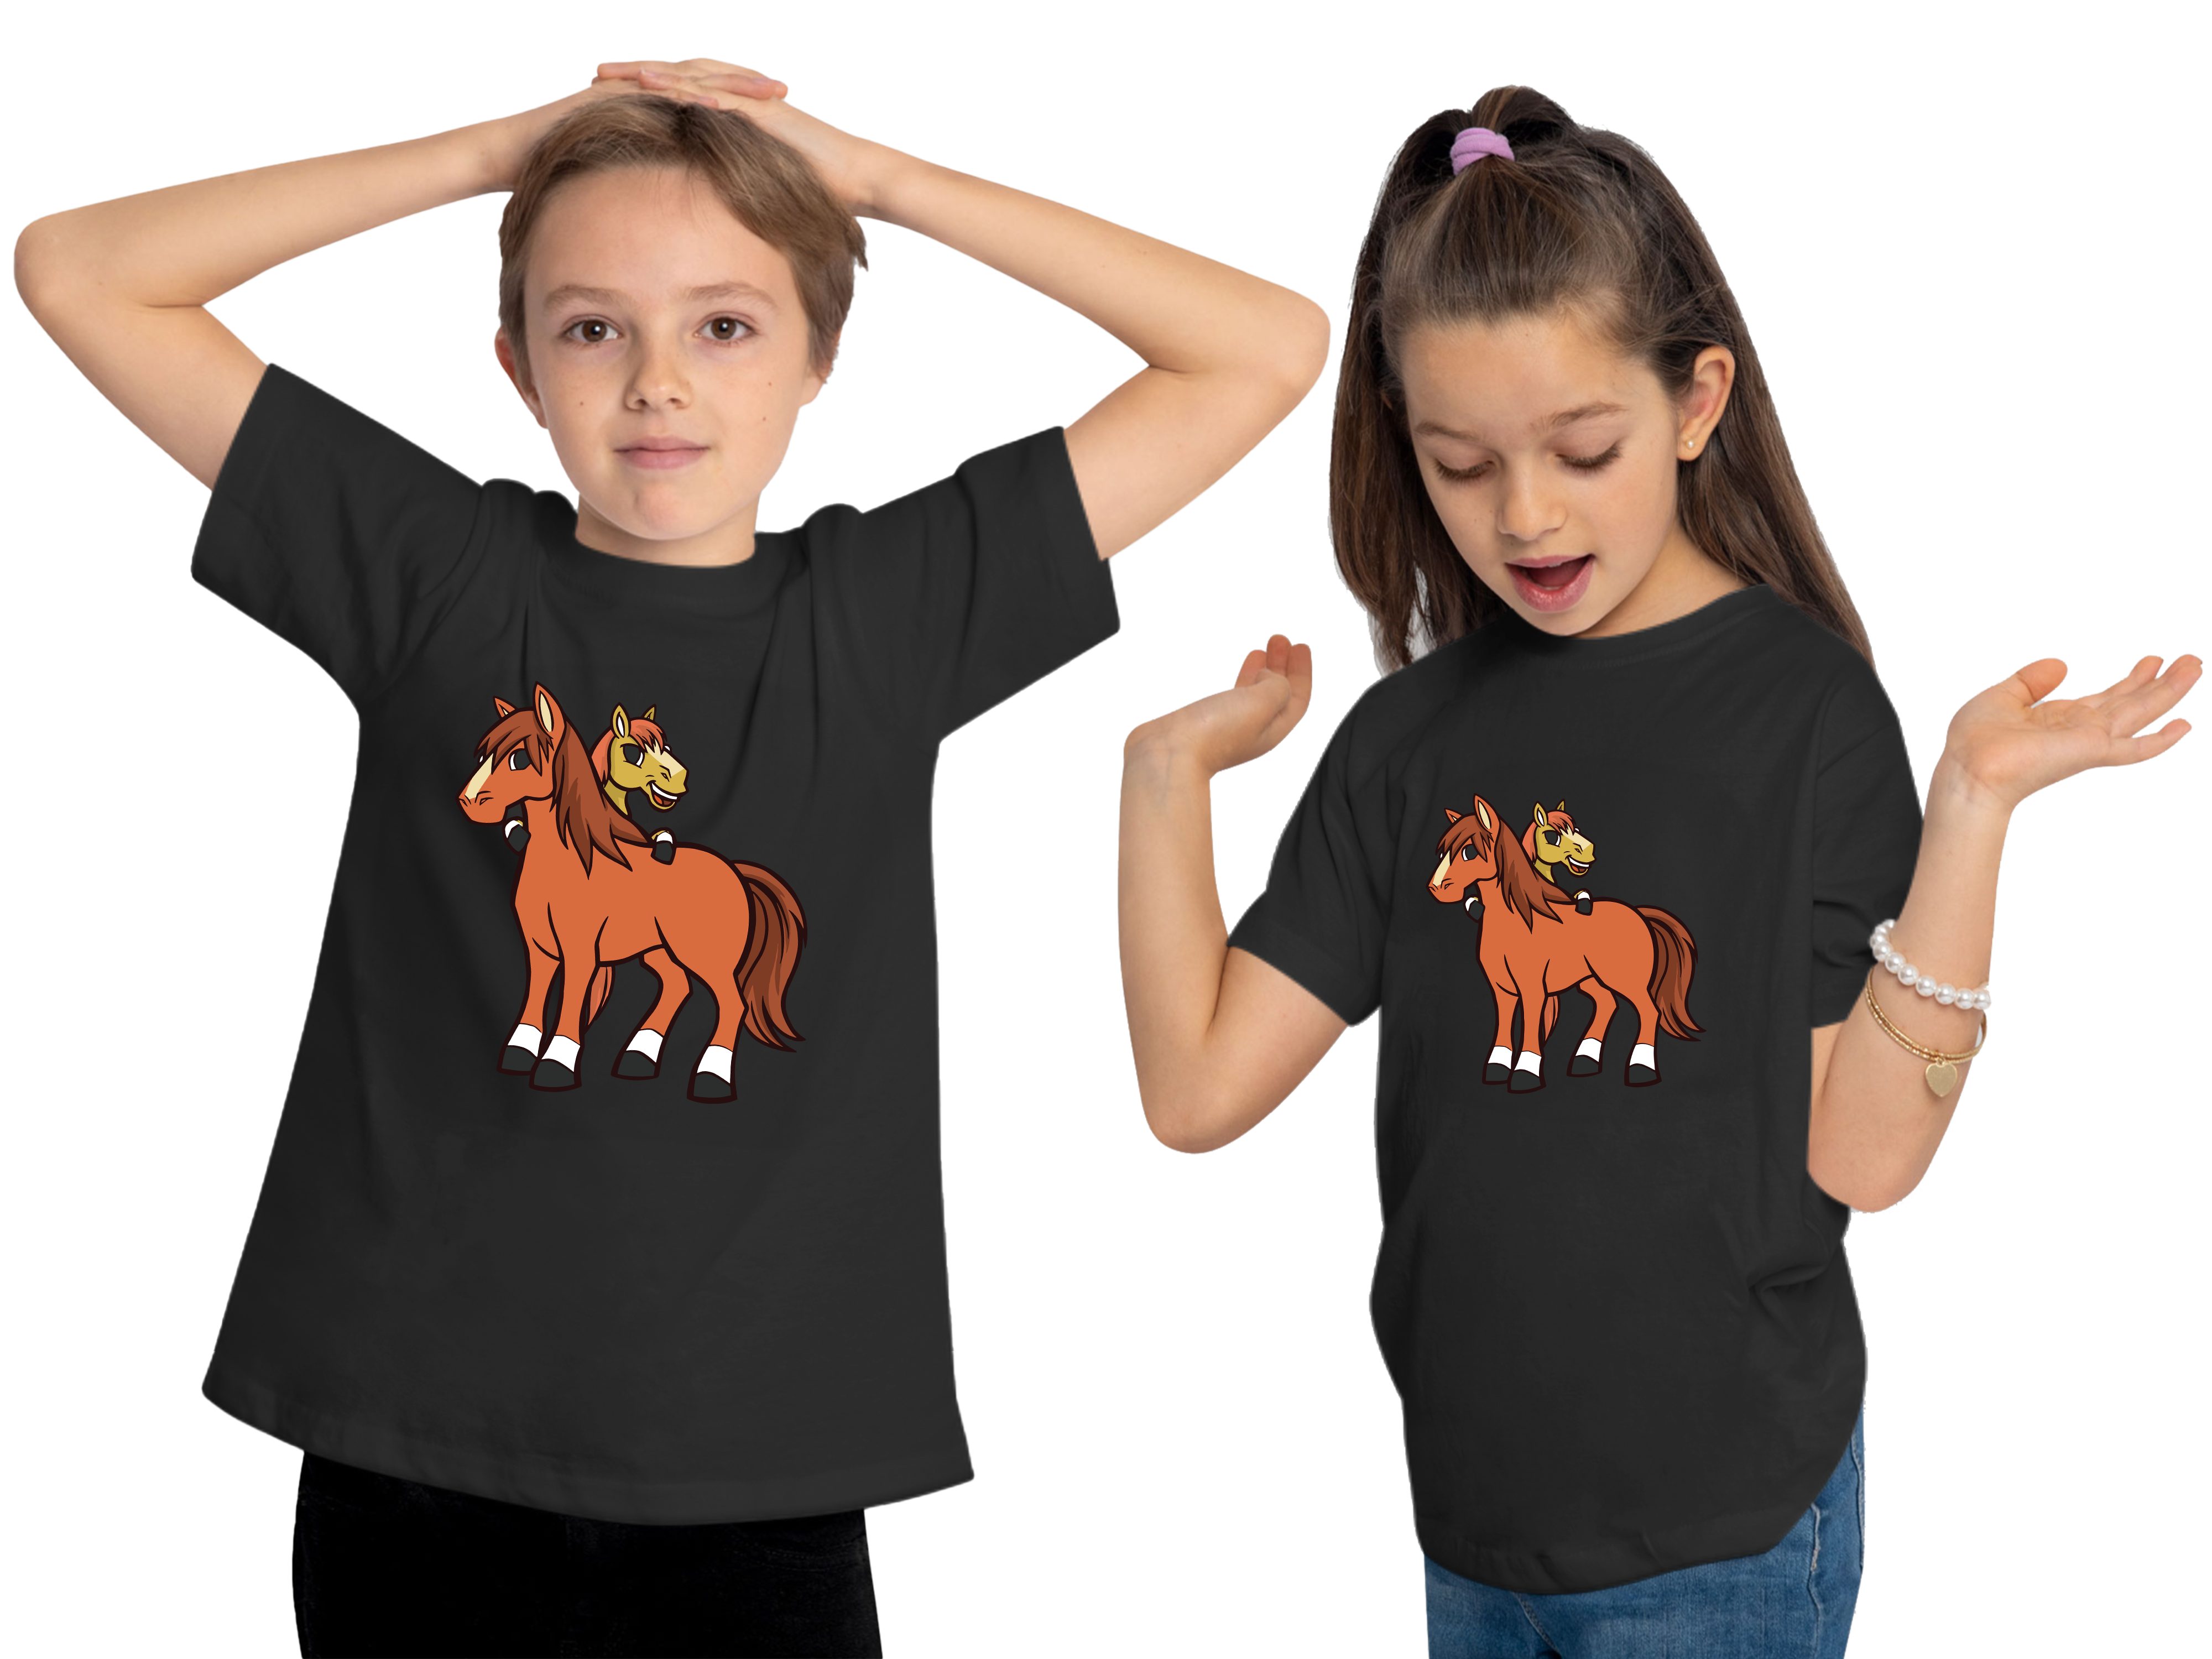 MyDesign24 T-Shirt Kinder i251 schwarz bedruckt mit Baumwollshirt Print cartoon 2 Shirt Pferde Aufdruck, - Pferde